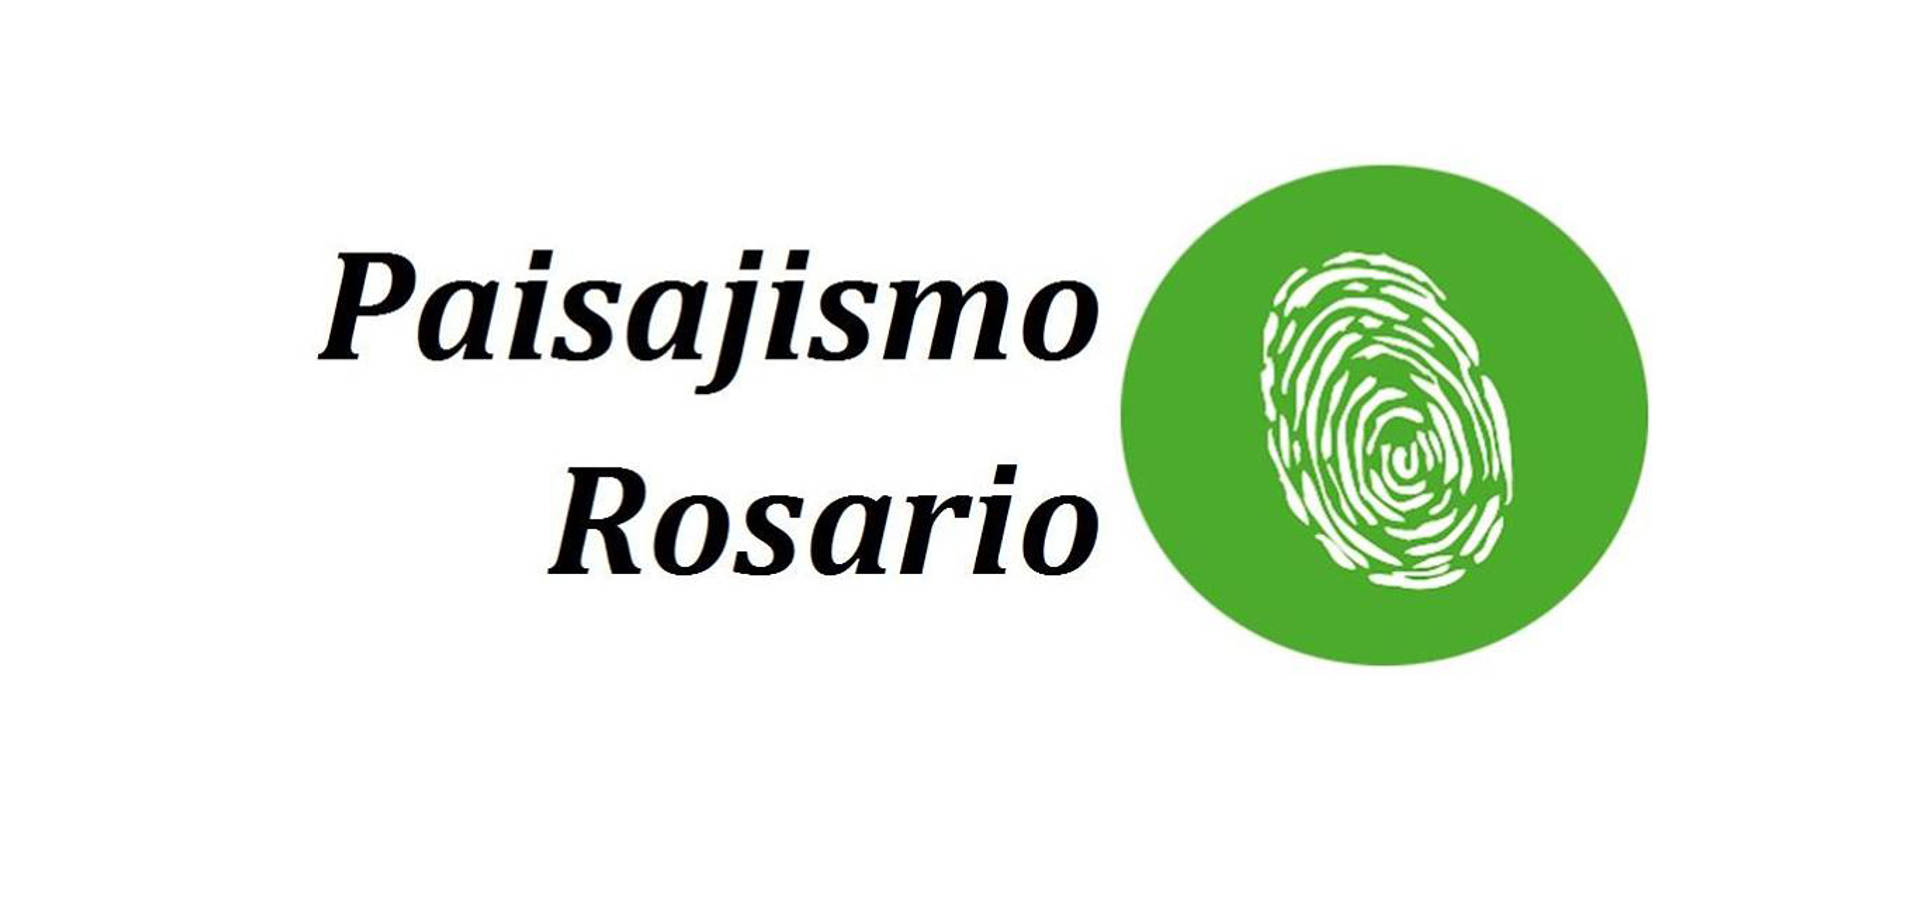 Paisajismo Rosario